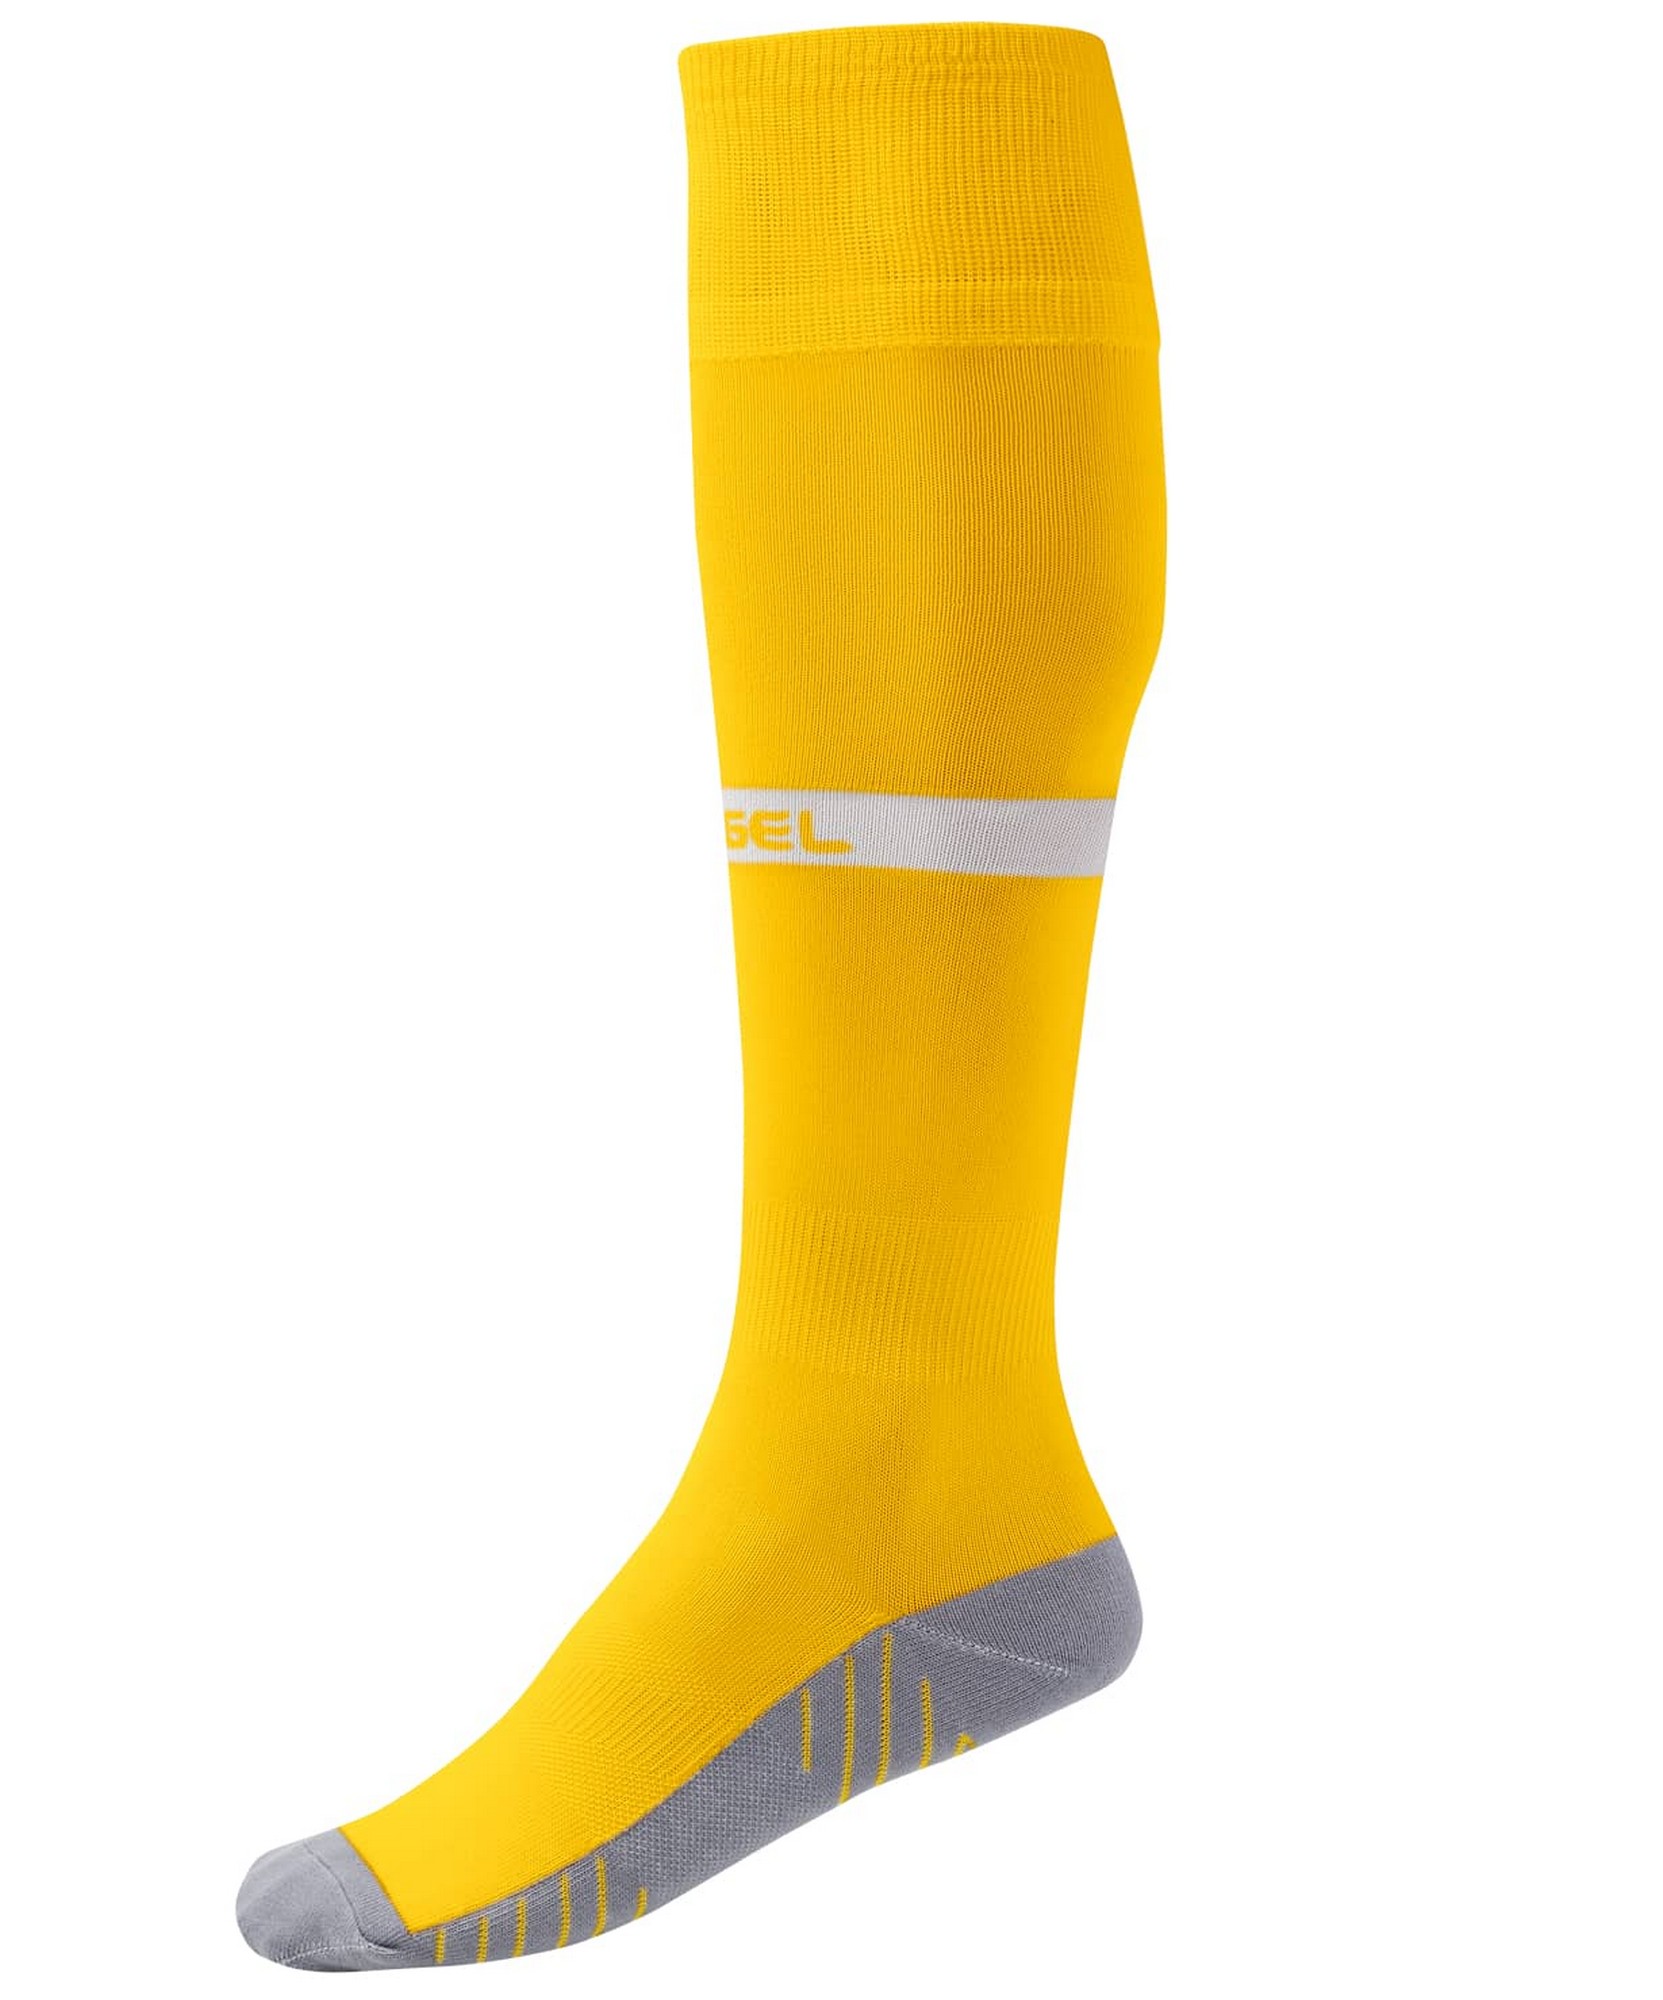 Купить Гетры футбольные Jögel Camp Advanced Socks желтыйбелый,